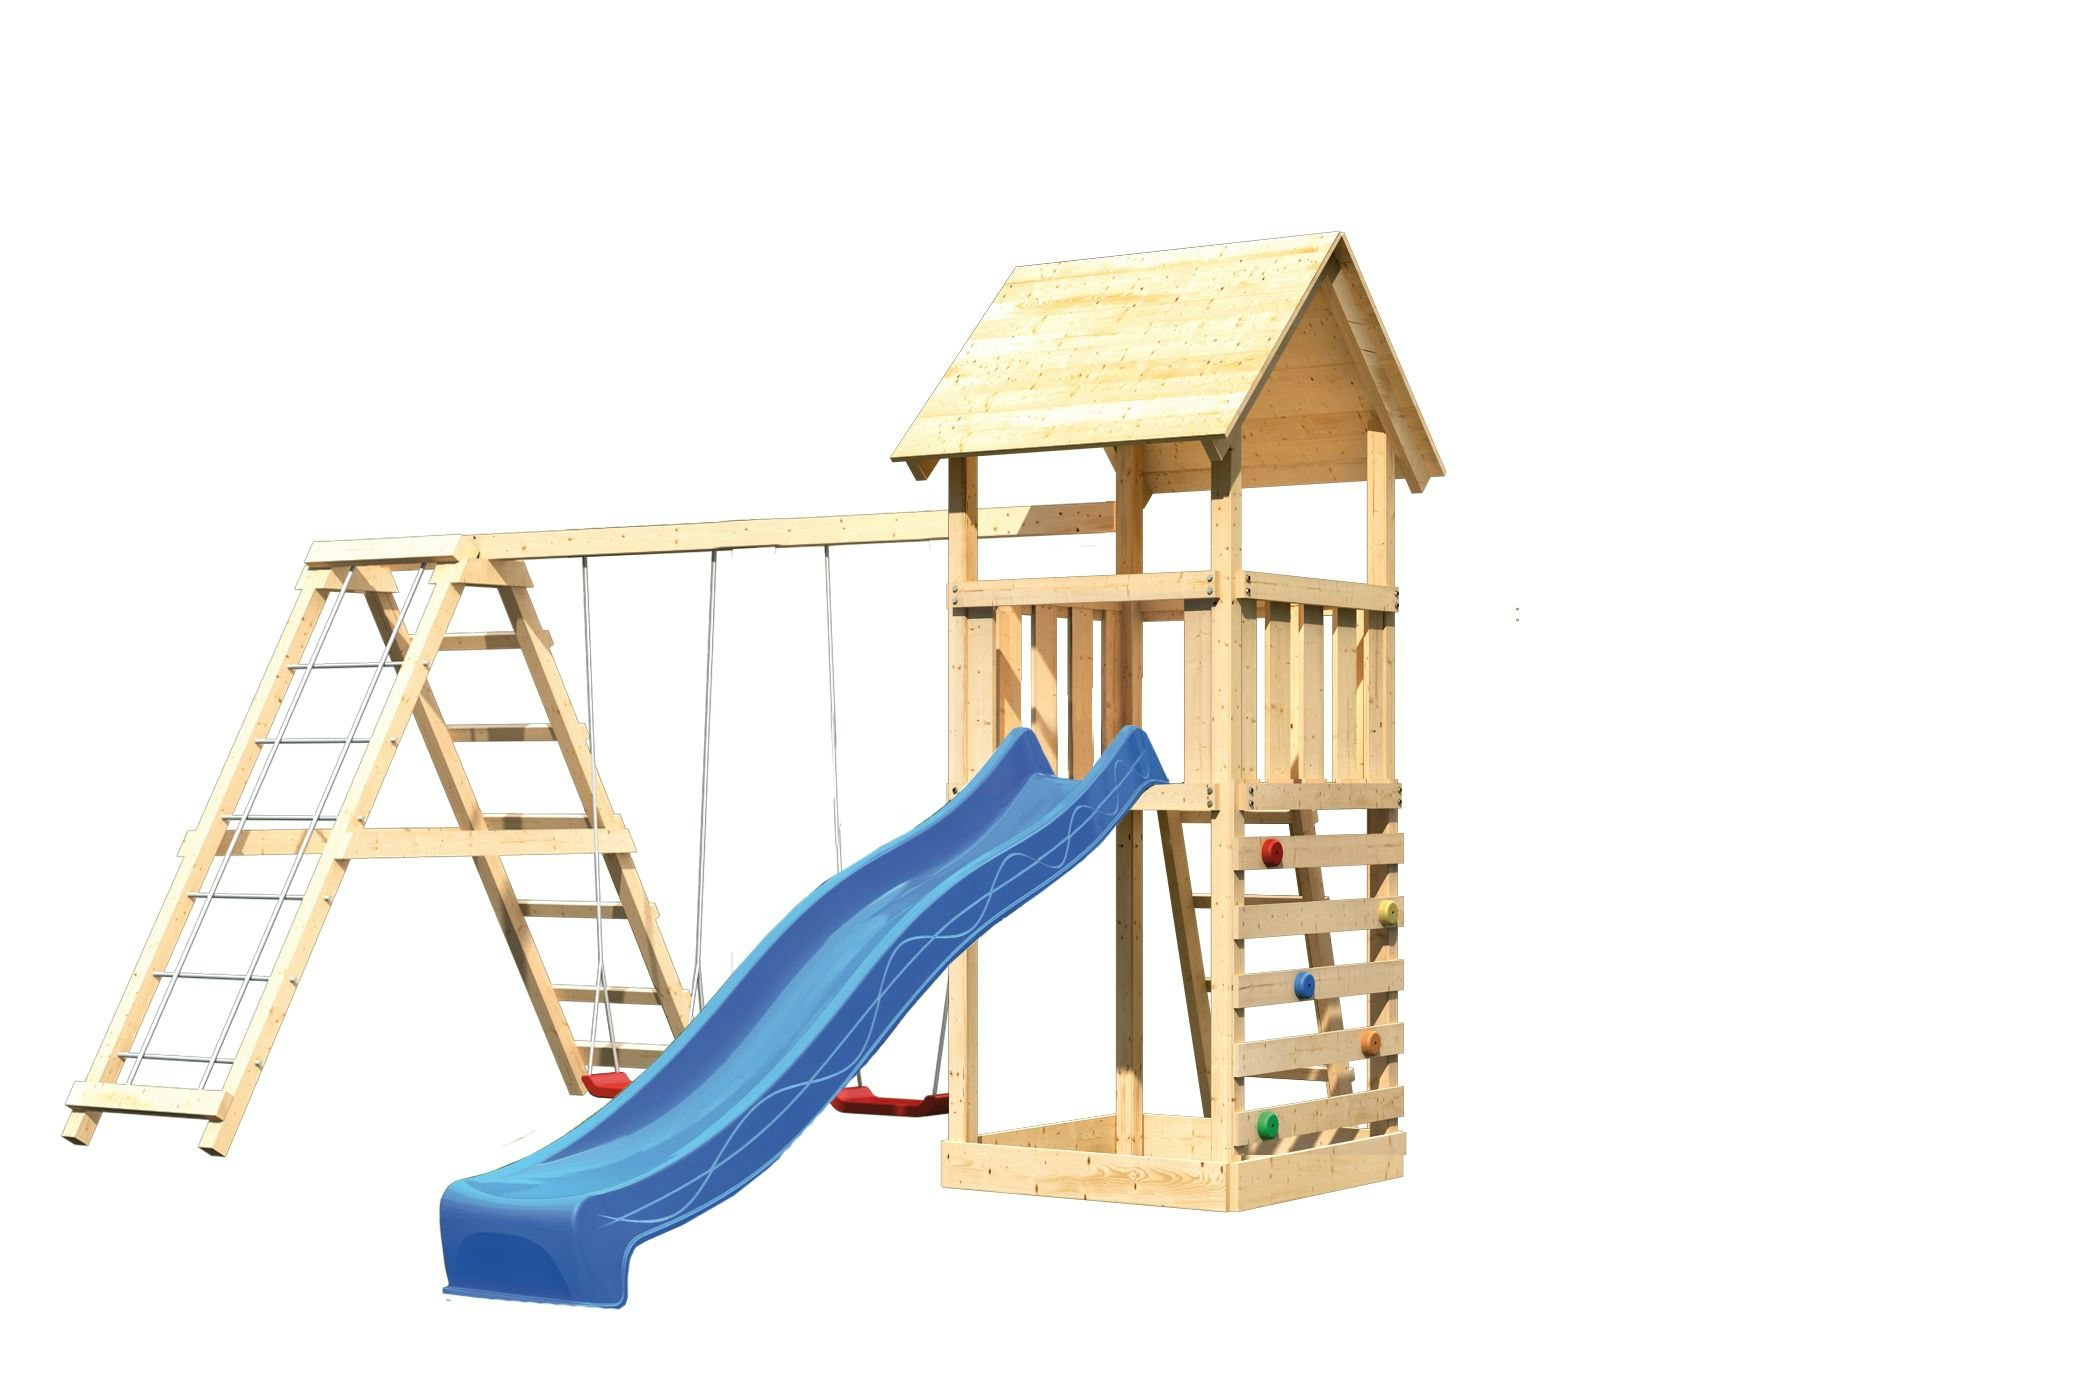 Akubi Kinderspielturm Lotti mit Satteldach inkl. Wellenrutsche, Doppelschaukelanbau, Klettergerüst und Kletterwand inkl. gratis Zubehörset